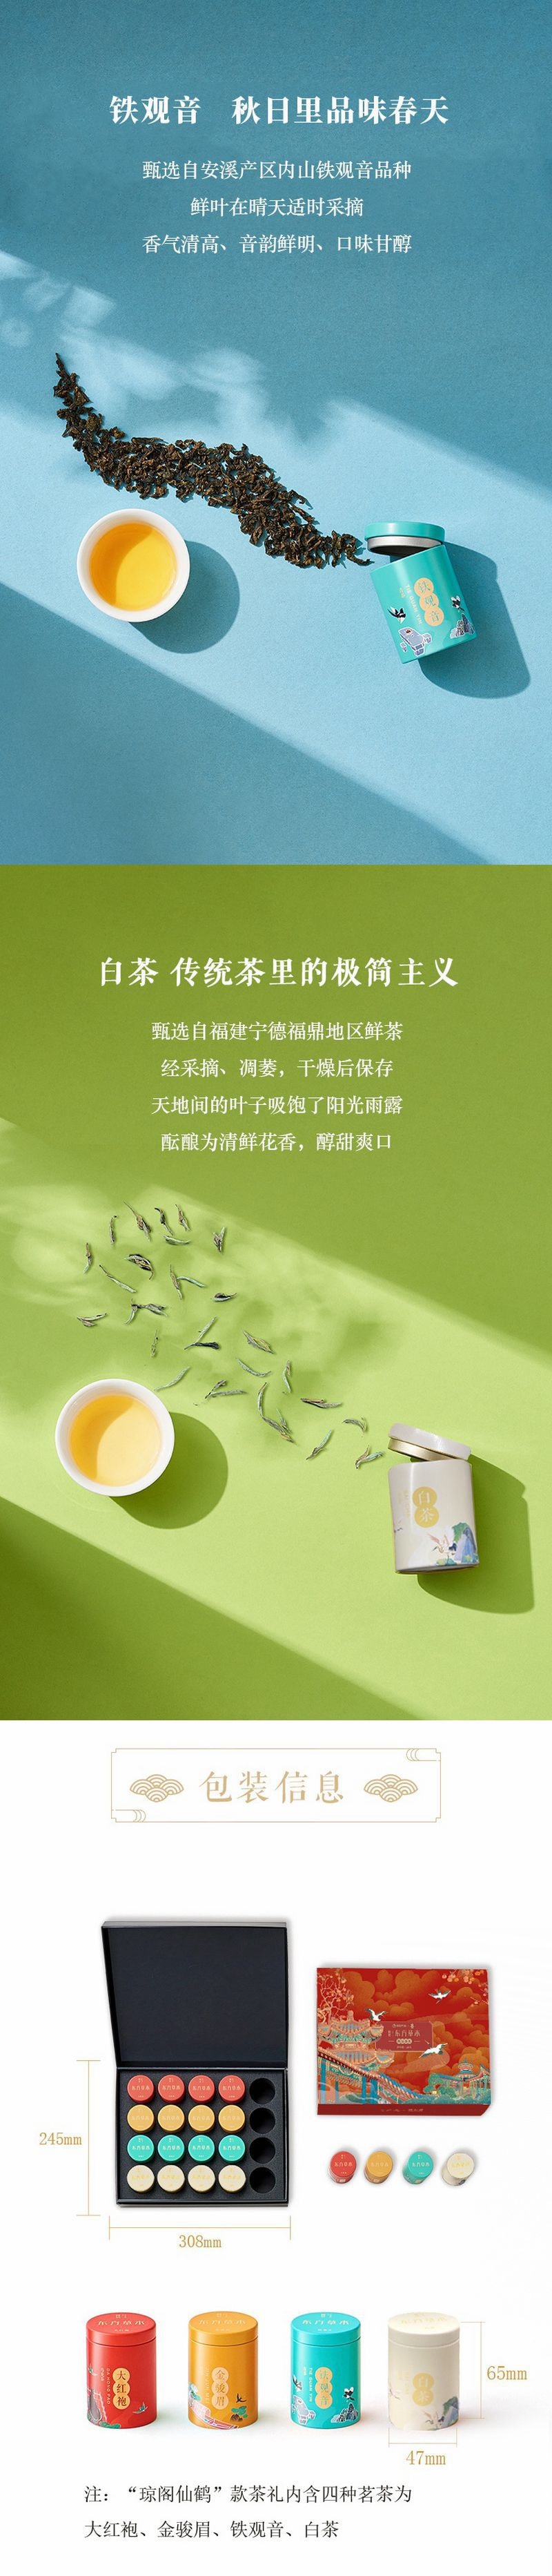 【中国直邮】网易严选 颐和园联名 4种茶礼 大红袍+金骏眉+铁观音+白茶 茶叶 20罐